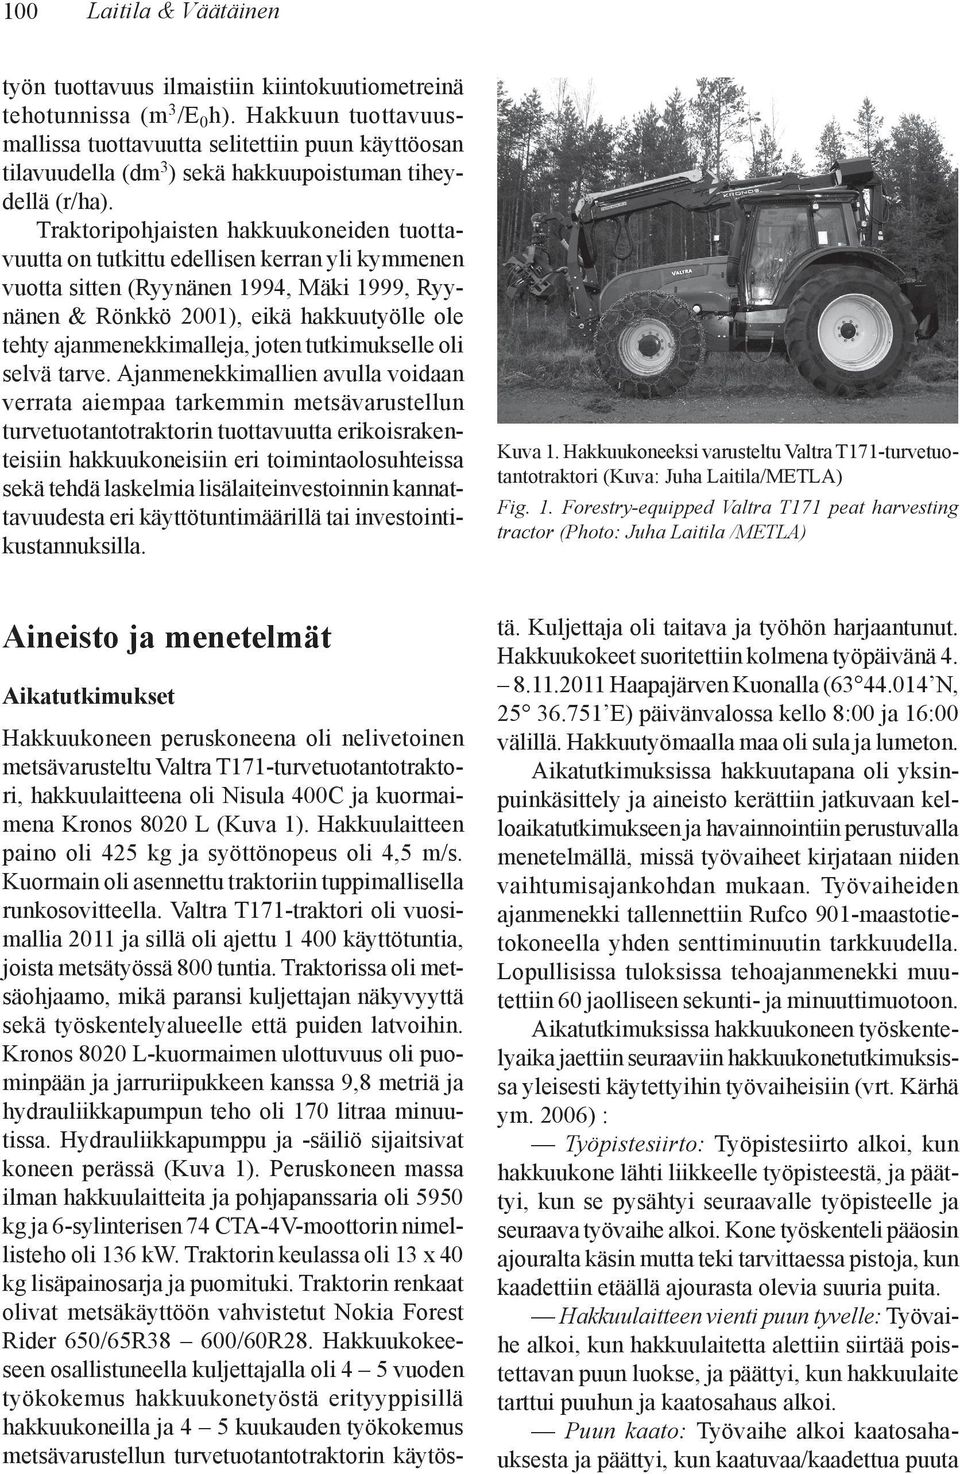 Traktoripohjaisten hakkuukoneiden tuottavuutta on tutkittu edellisen kerran yli kymmenen vuotta sitten (Ryynänen 1994, Mäki 1999, Ryynänen & Rönkkö 21), eikä hakkuutyölle ole tehty